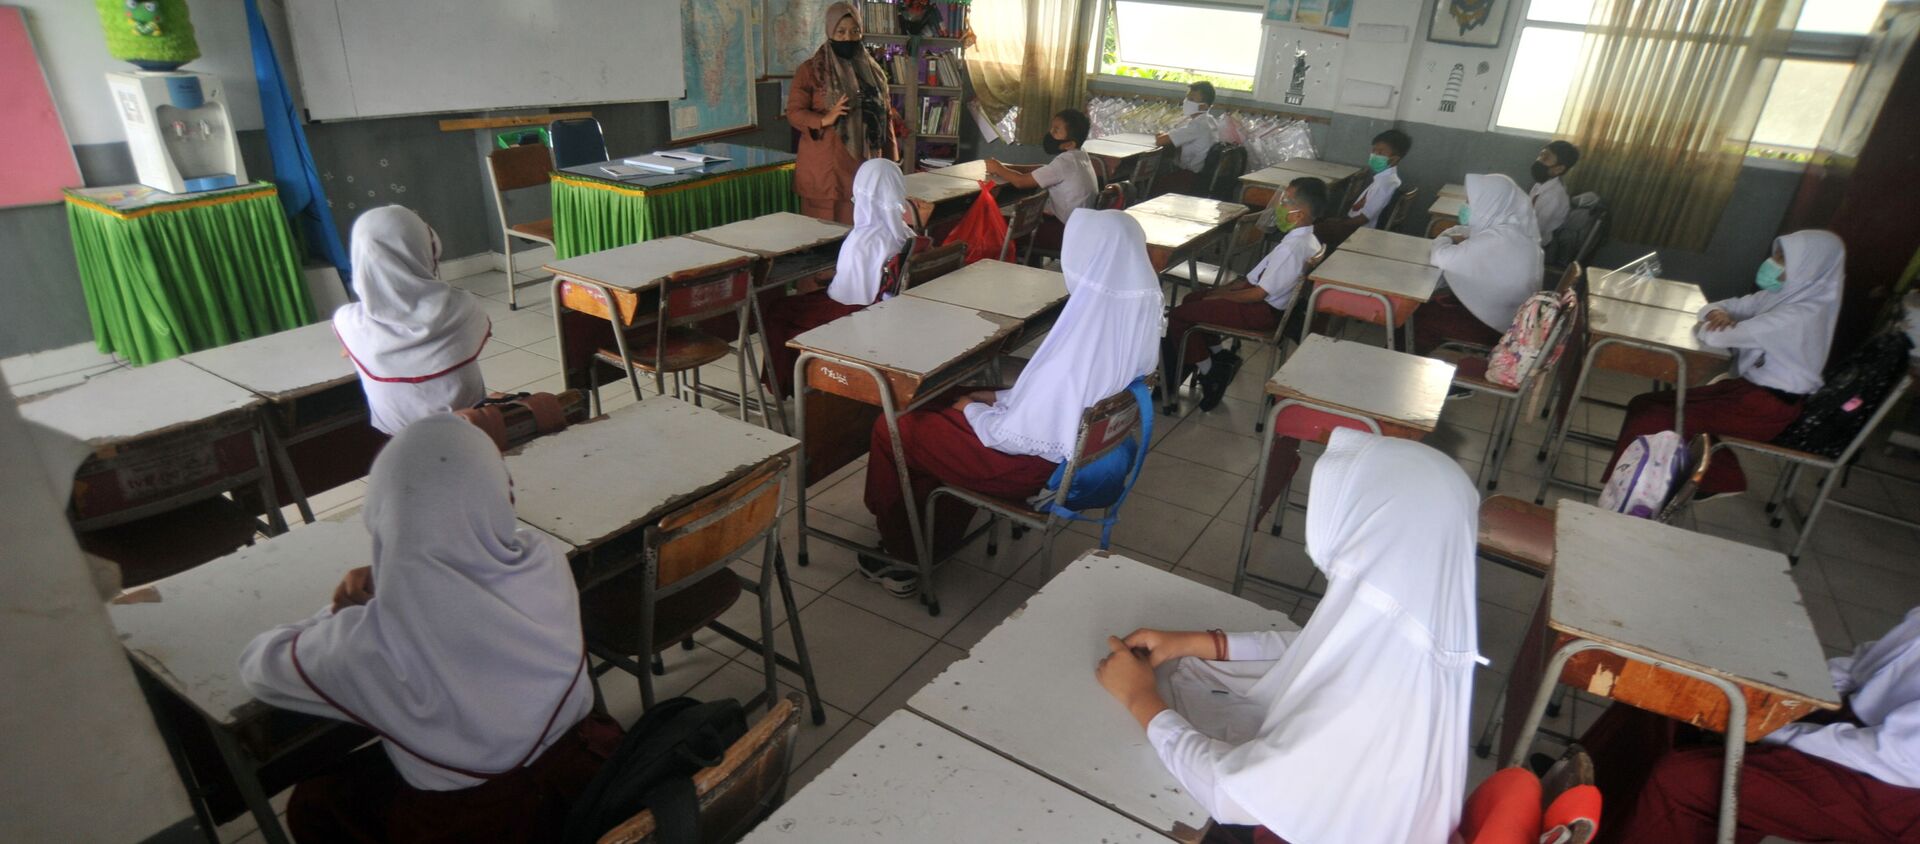 Endonezya'nın Batı Sumatra eyaletindeki Padang şehrinde bir okulda ders görülürken tesettürlü öğretmen ve öğrenciler - Sputnik Türkiye, 1920, 05.02.2021